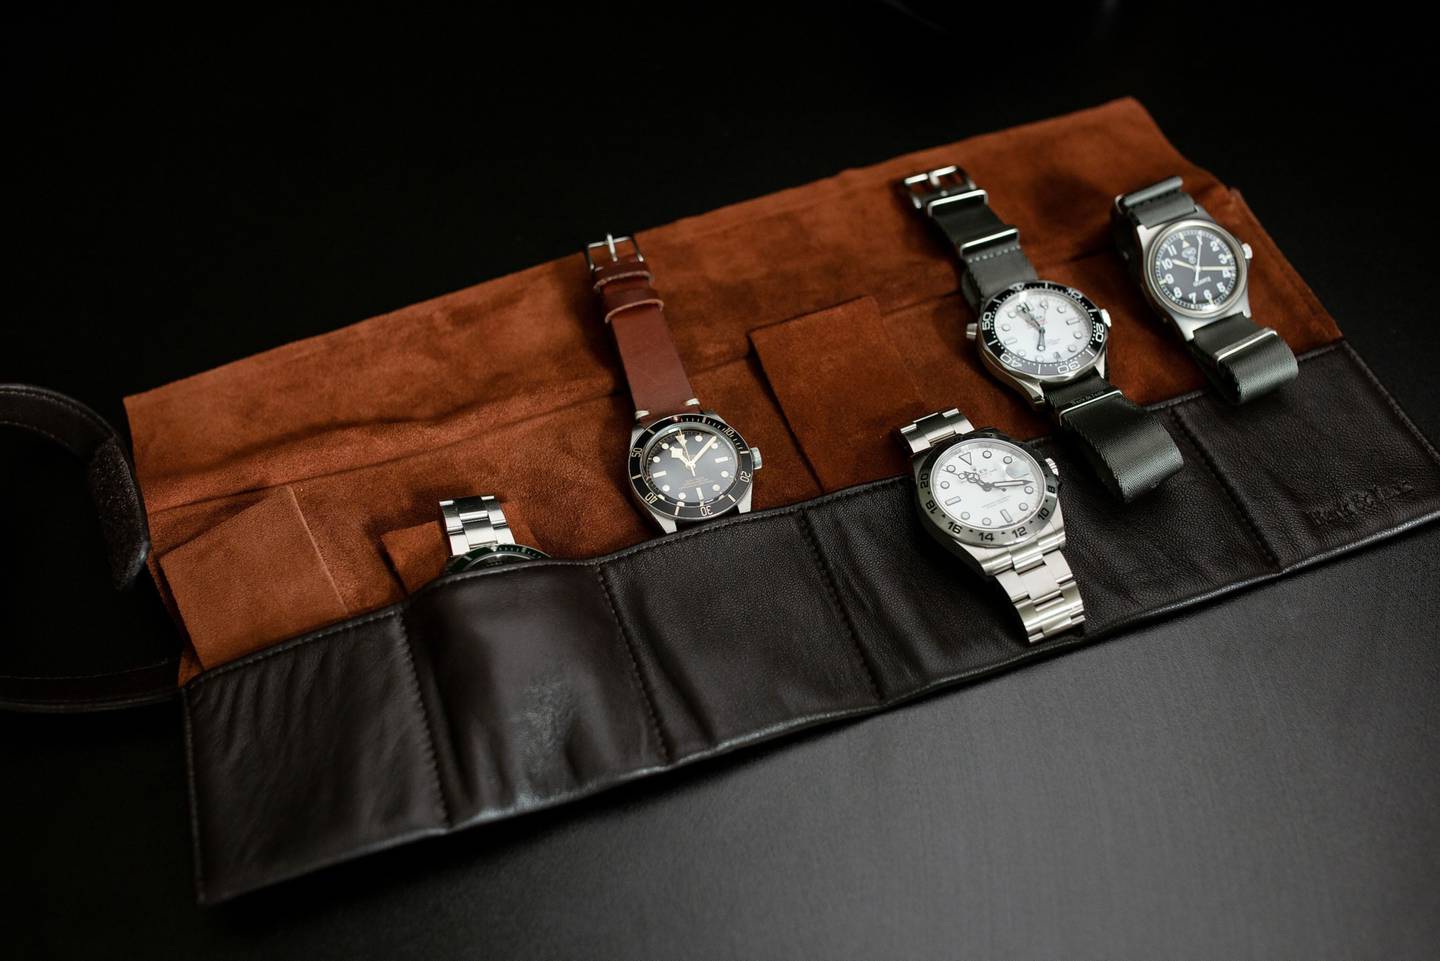 Oferta de relógios de luxo como o Rolex Daytona ou o Patek Nautilus 5711A “agora é muito maior”